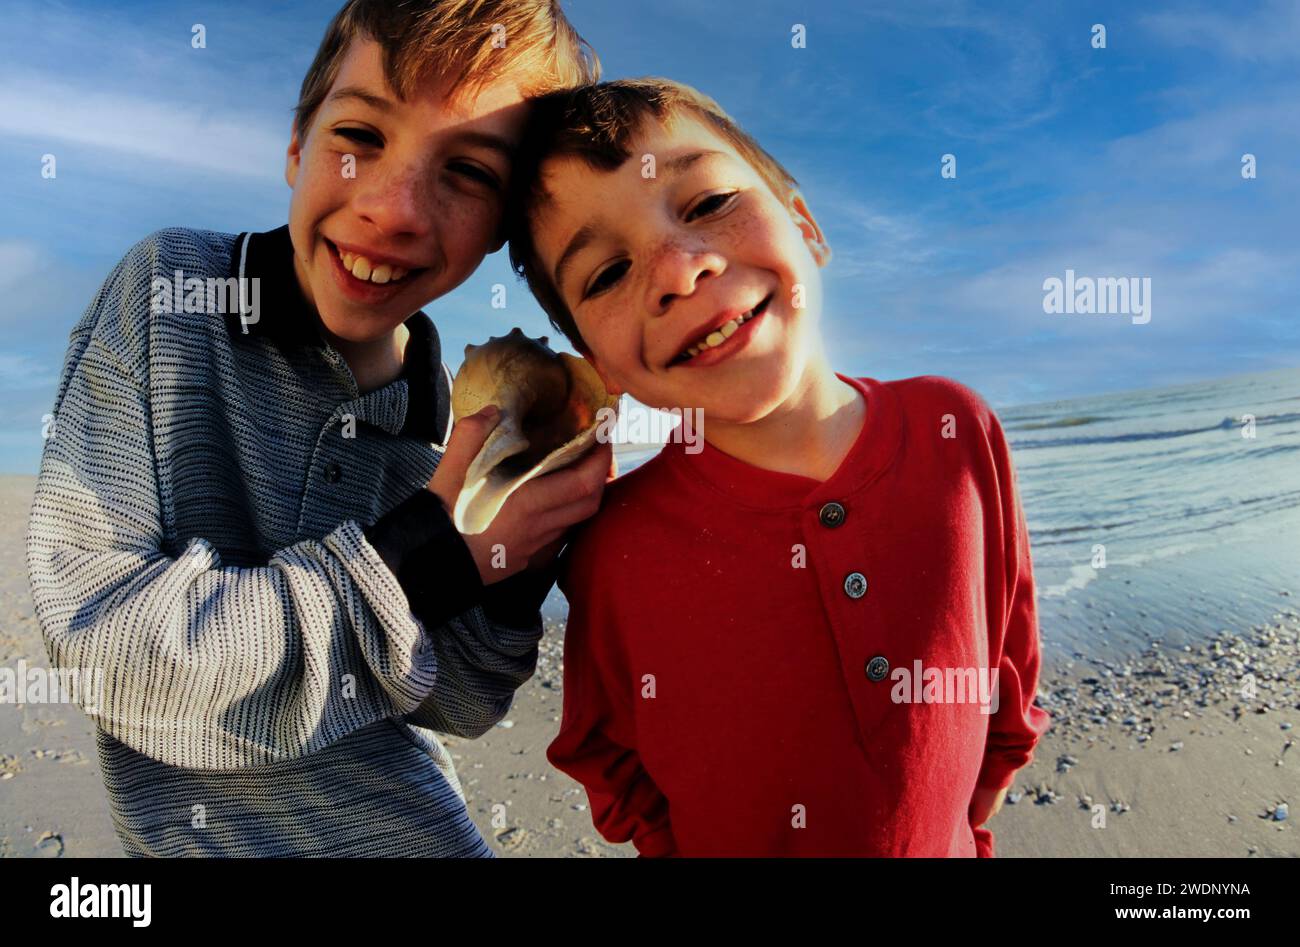 Ein Porträt von zwei Brüdern, die glücklich eine Muschelmuschel hielten, stand während der Sommerferien am Strand Stockfoto